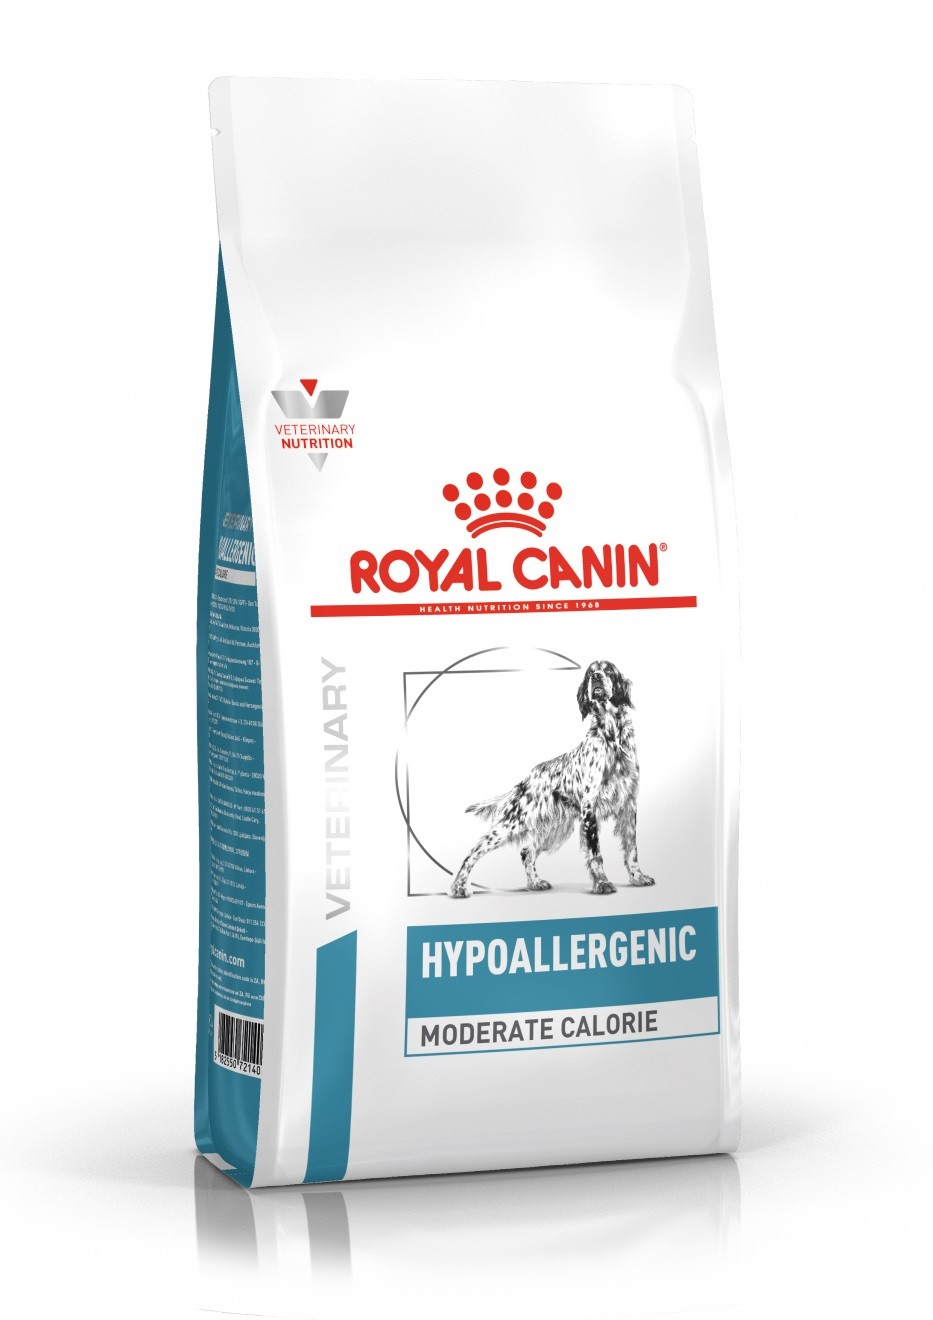  ROYAL CANIN Dieta Veterinária Hypoallergenic Caloria Moderada HME23 para cão